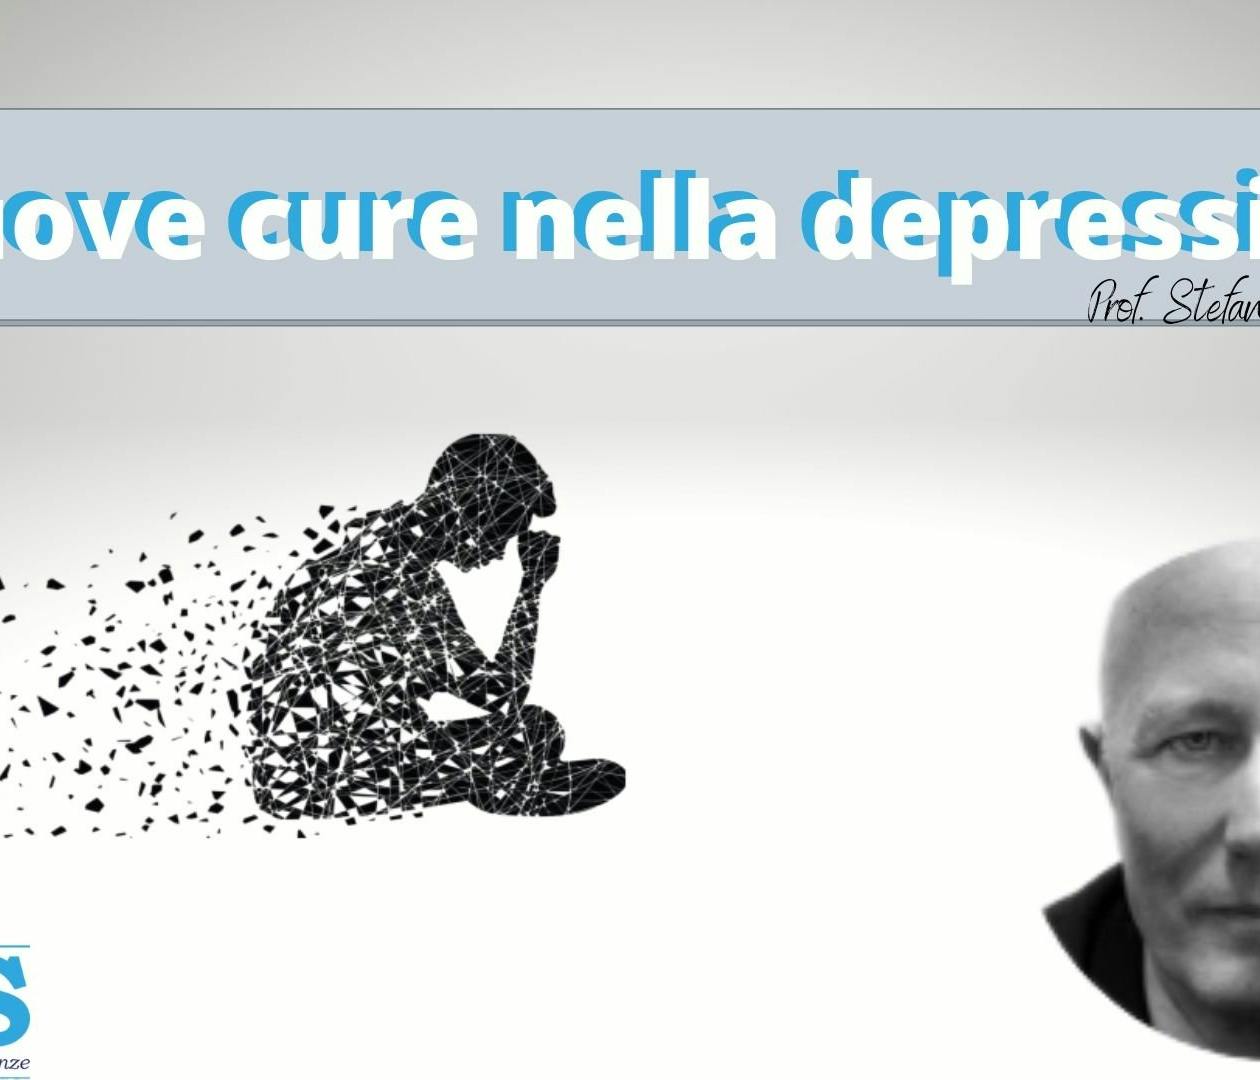 Copertina video "Nuove cure nella Depressione" del Prof. Stefano Pallanti